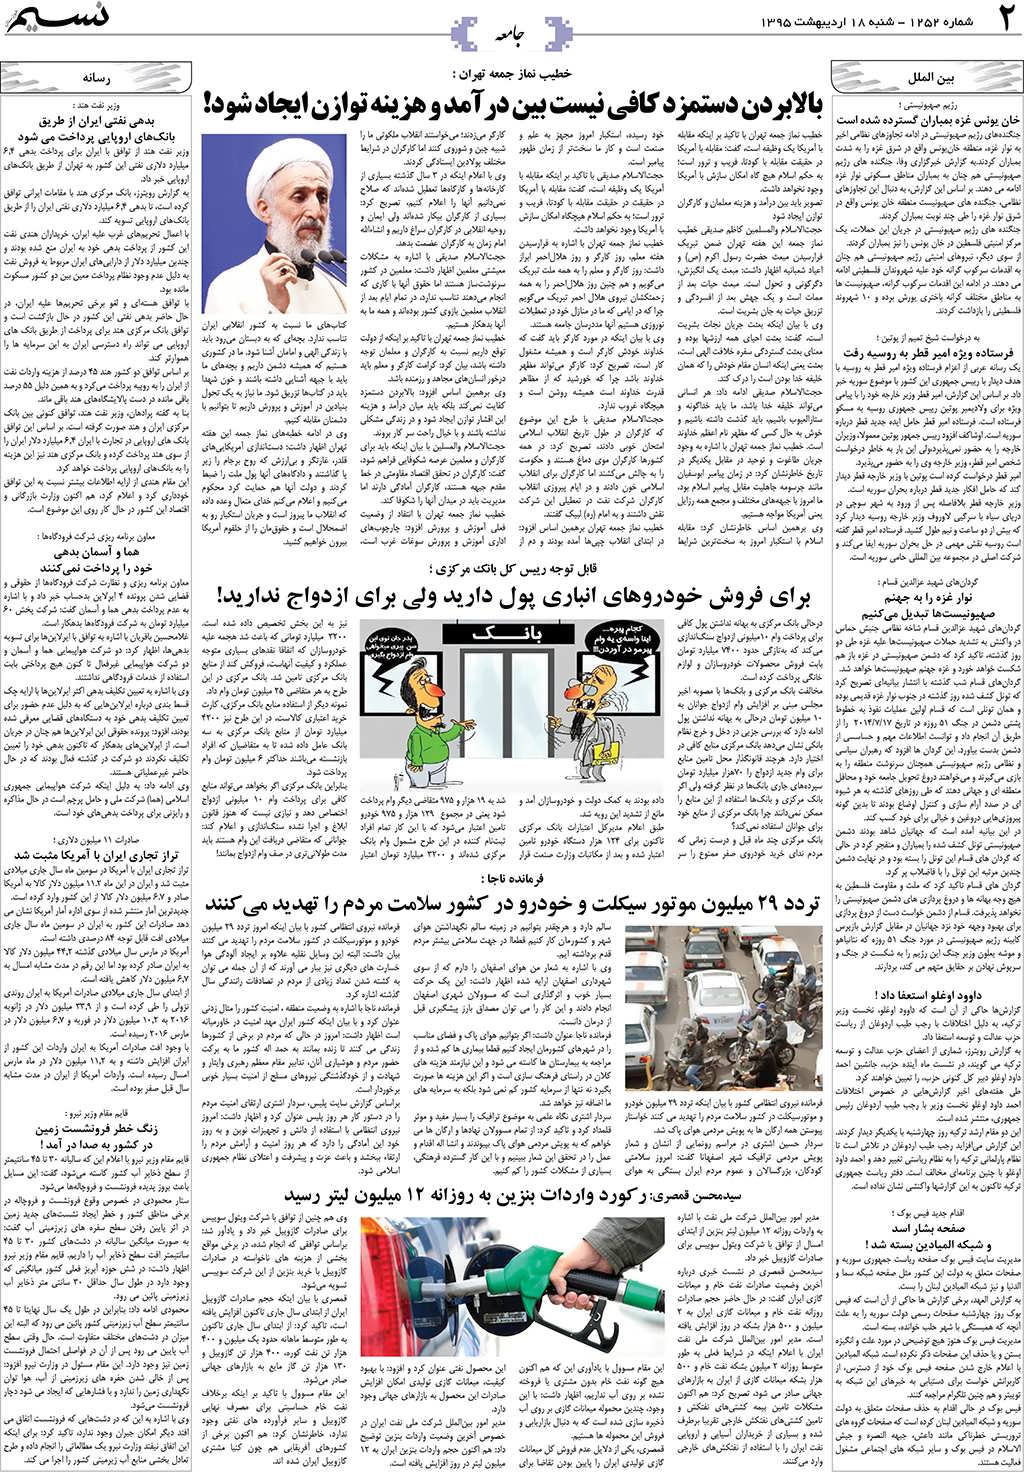 صفحه جامعه روزنامه نسیم شماره 1252